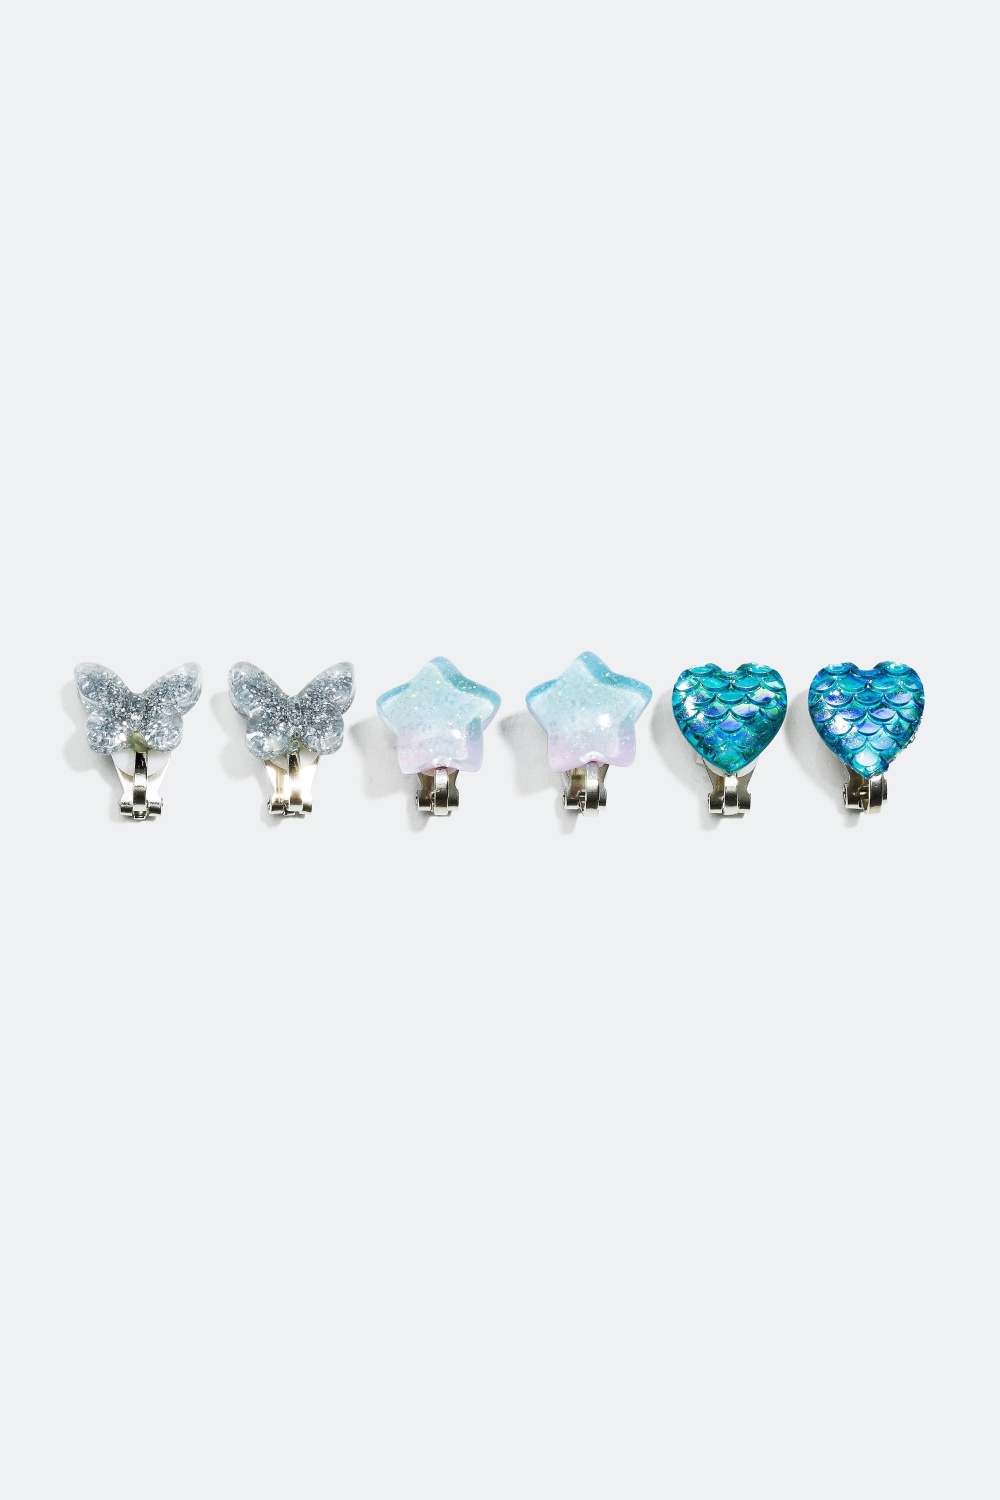 Clipsörhängen med fjäril, stjärna och hjärta, 3-pack i gruppen Barn / Barnsmycken / Barnörhängen hos Glitter (322671)